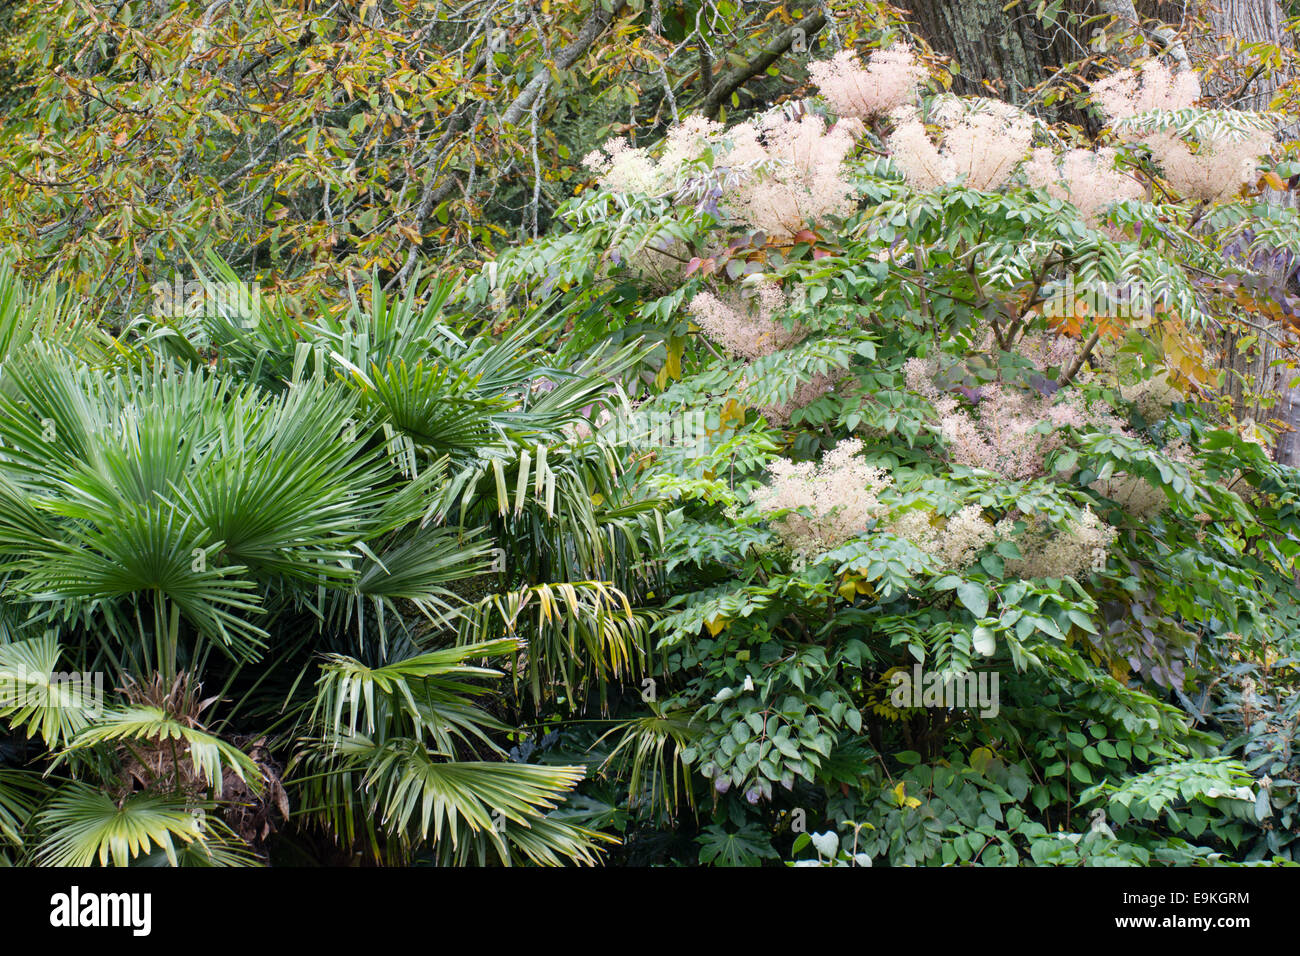 Winterharte Trachycarpus Palmen, Trachycarpus Fortunei und der japanischen Angelica Baum, Aralia Elata, kombinieren in einem exotischen Pflanzen Regelung Stockfoto